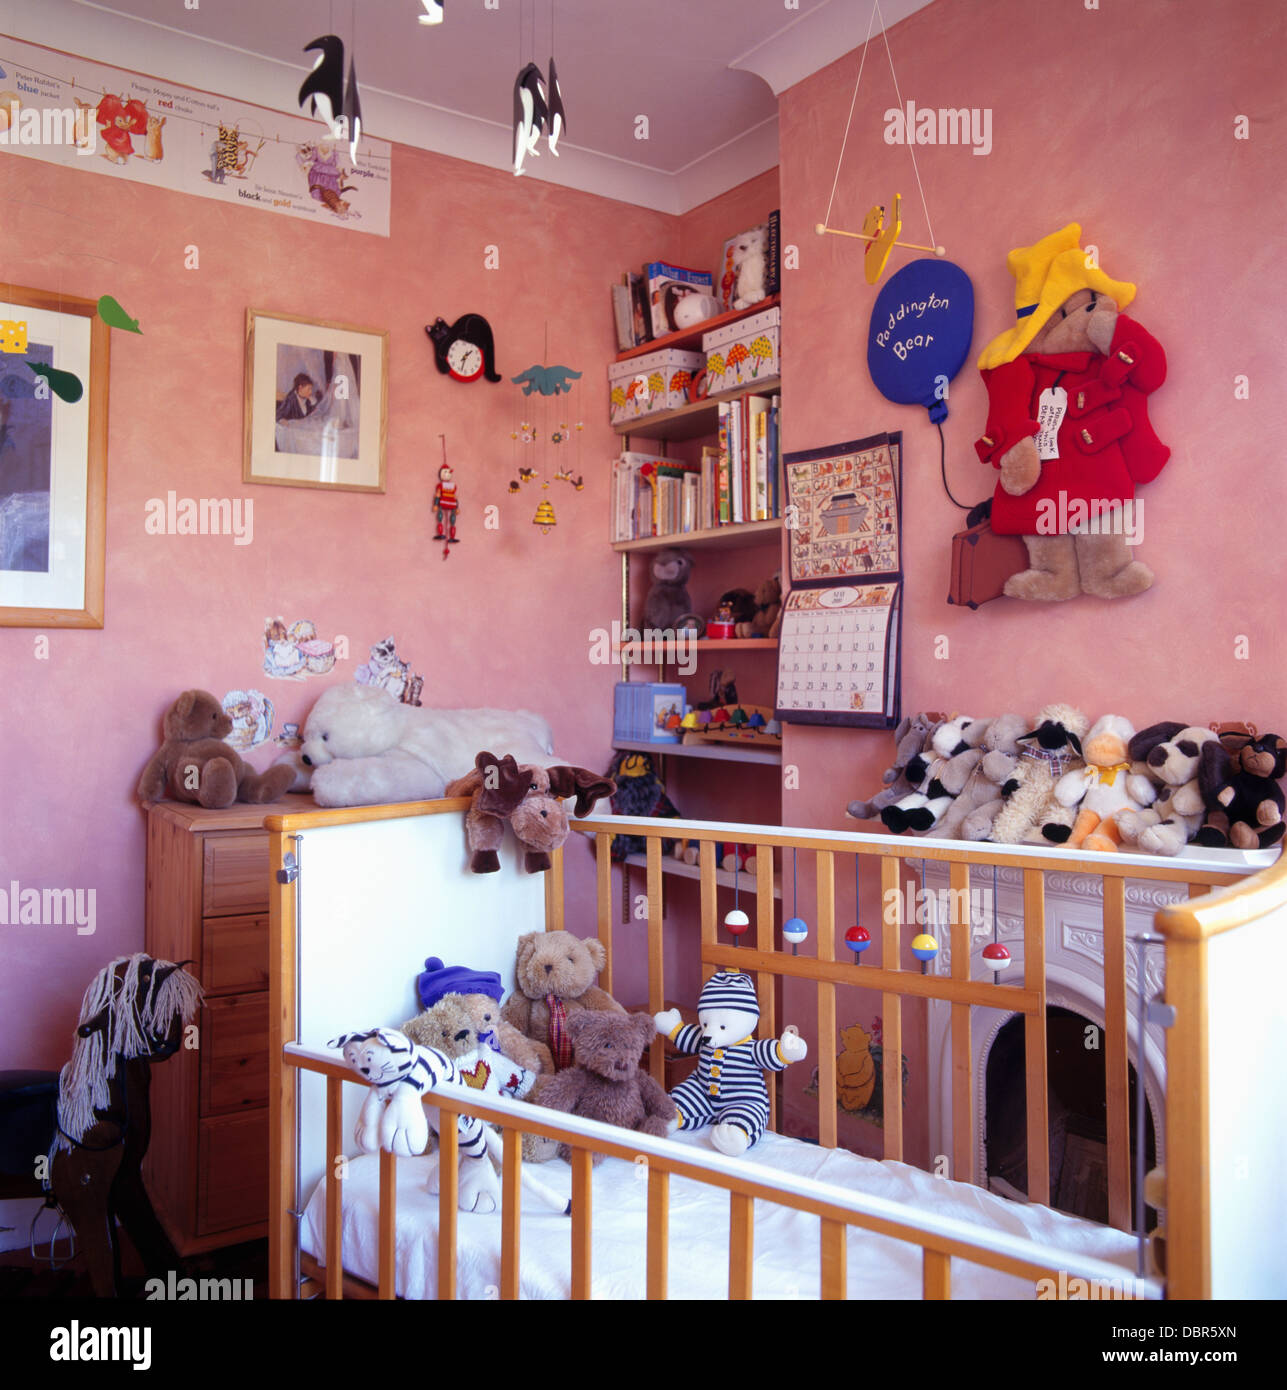 Les jouets mous dans lit bébé en rose nursery chambre avec grand ours  Paddington avis sur le mur Photo Stock - Alamy